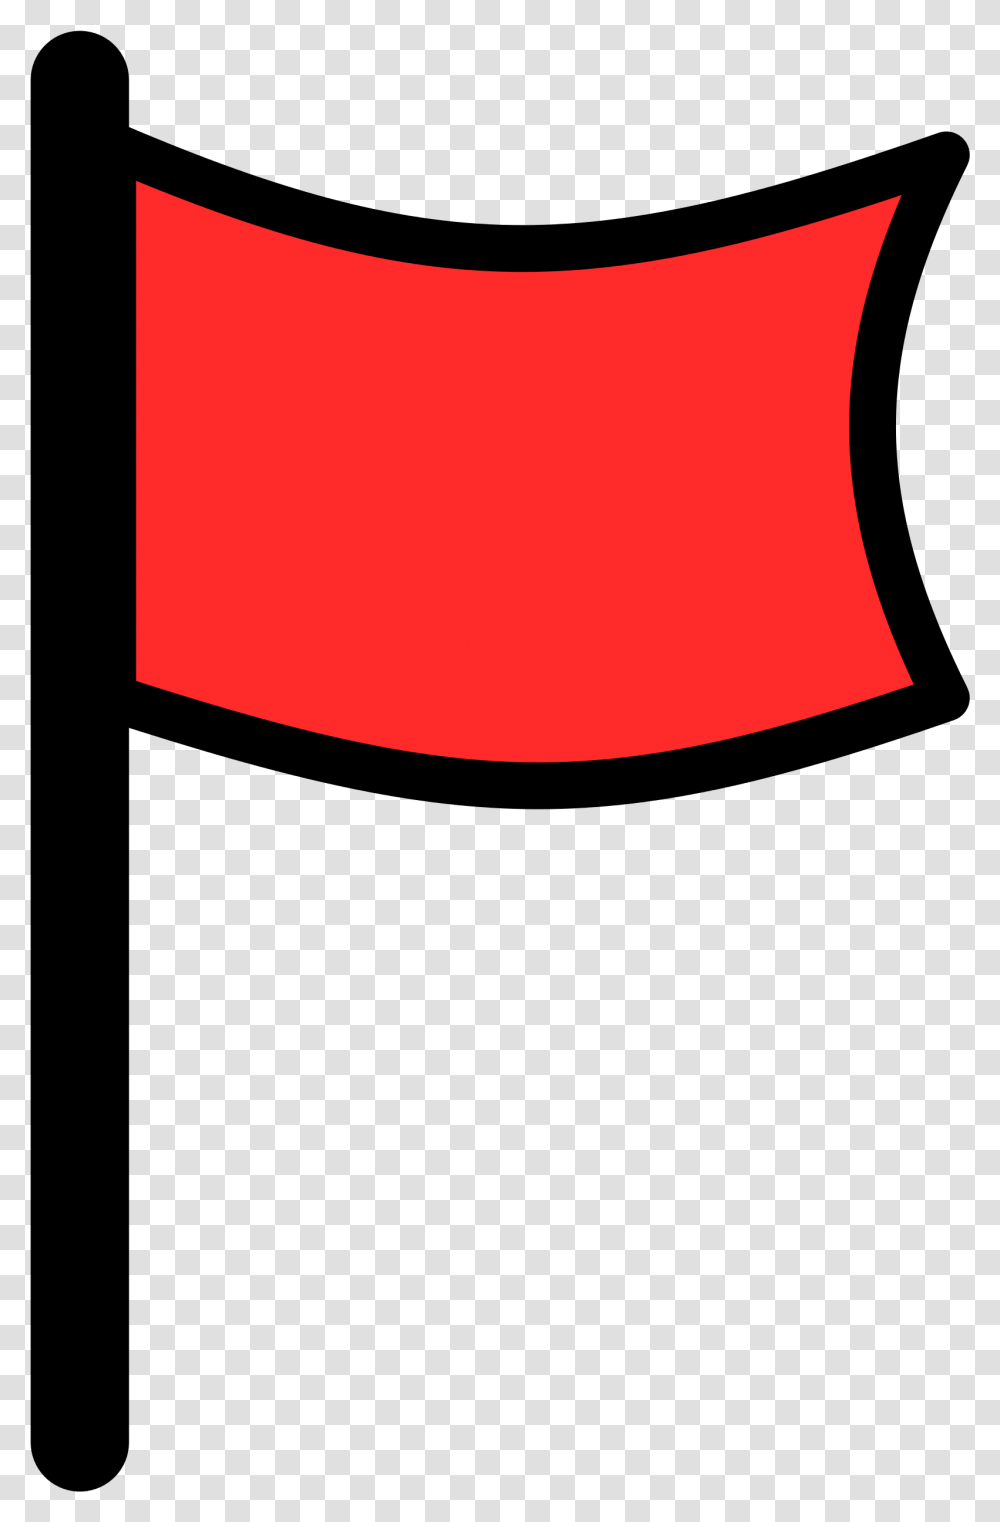 Google Map Image Flag For Google Map Background Red Flag, Clothing, Apparel, Logo, Symbol Transparent Png